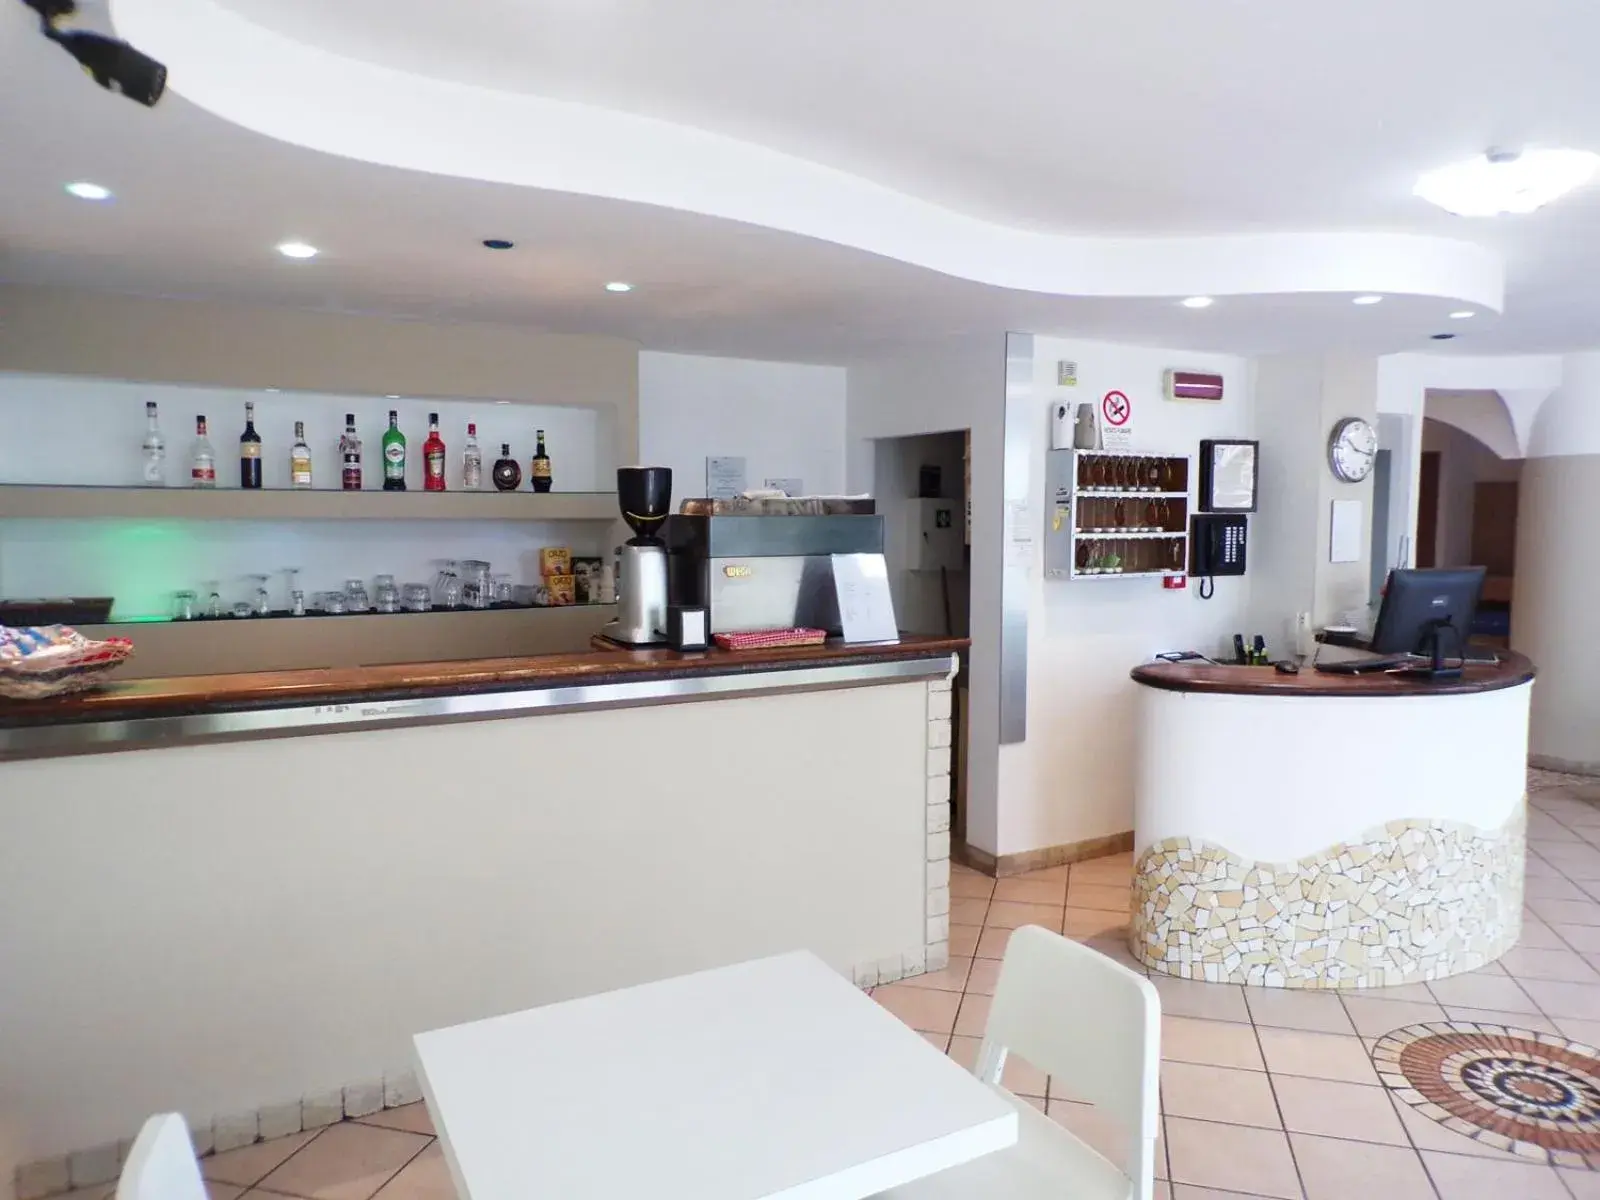 Lounge or bar, Lounge/Bar in Hotel Frida